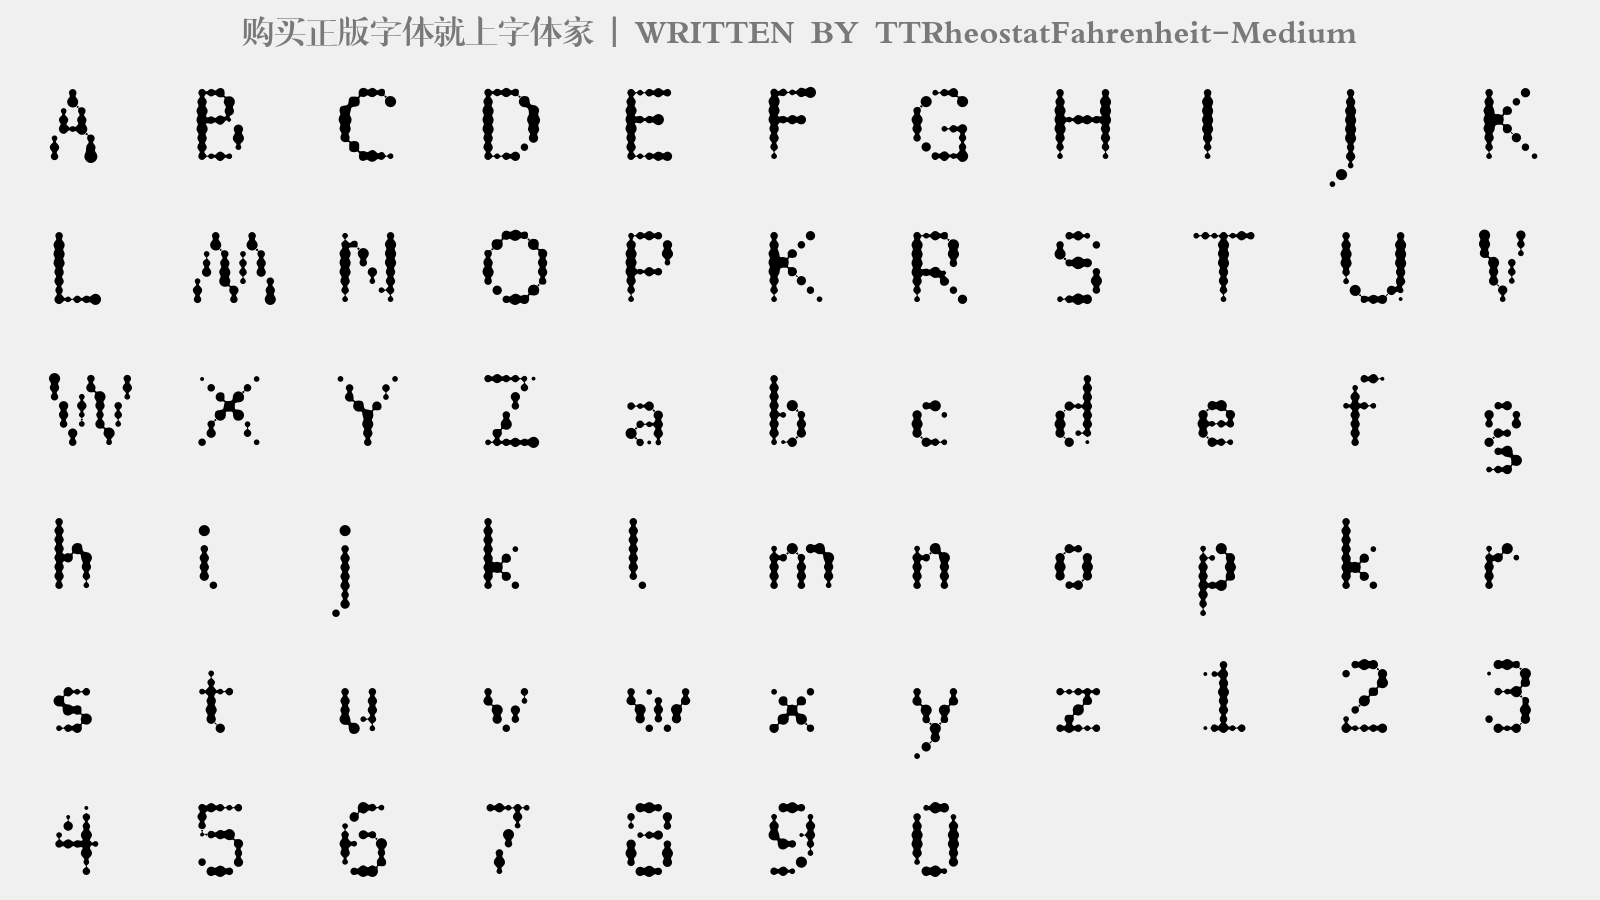 TTRheostatFahrenheit-Medium - 大写字母/小写字母/数字